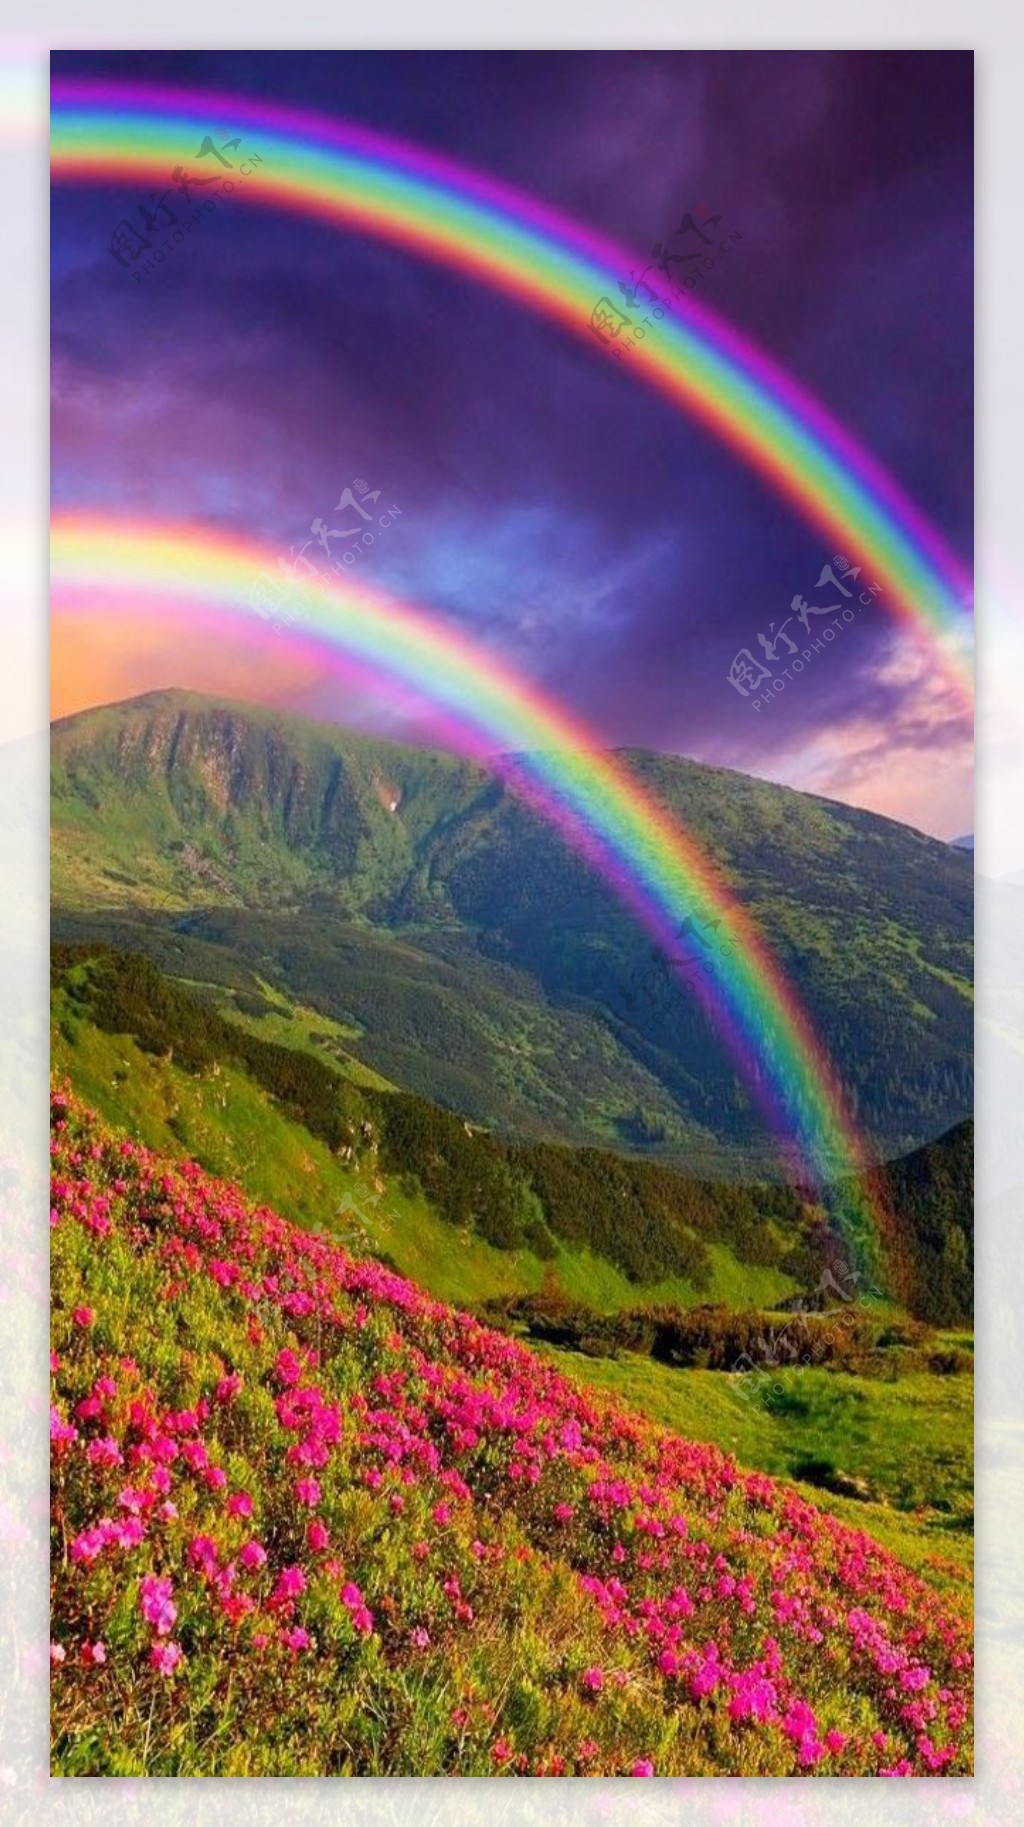 高山上的彩虹